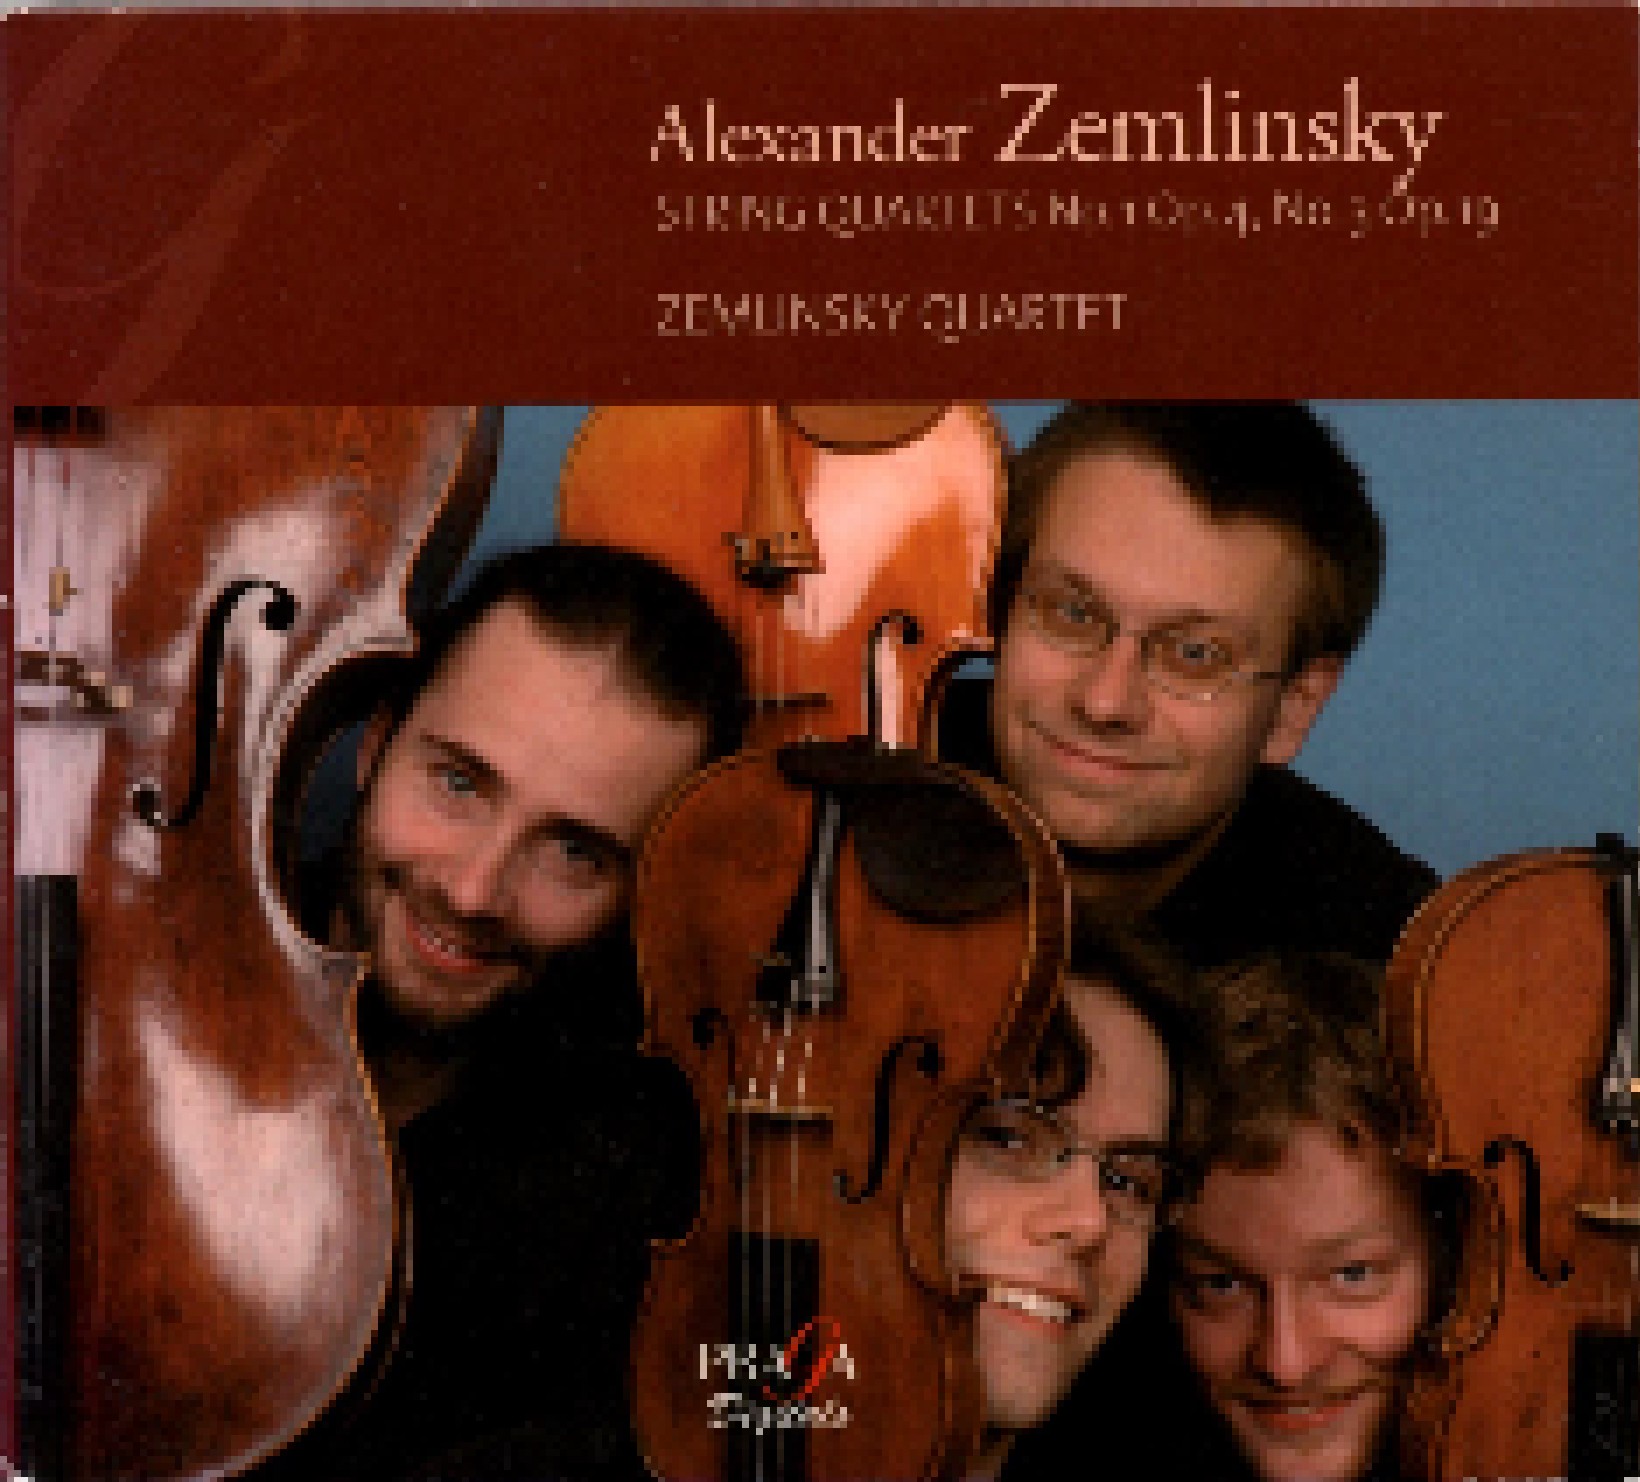 sibelius string quartet op. 4